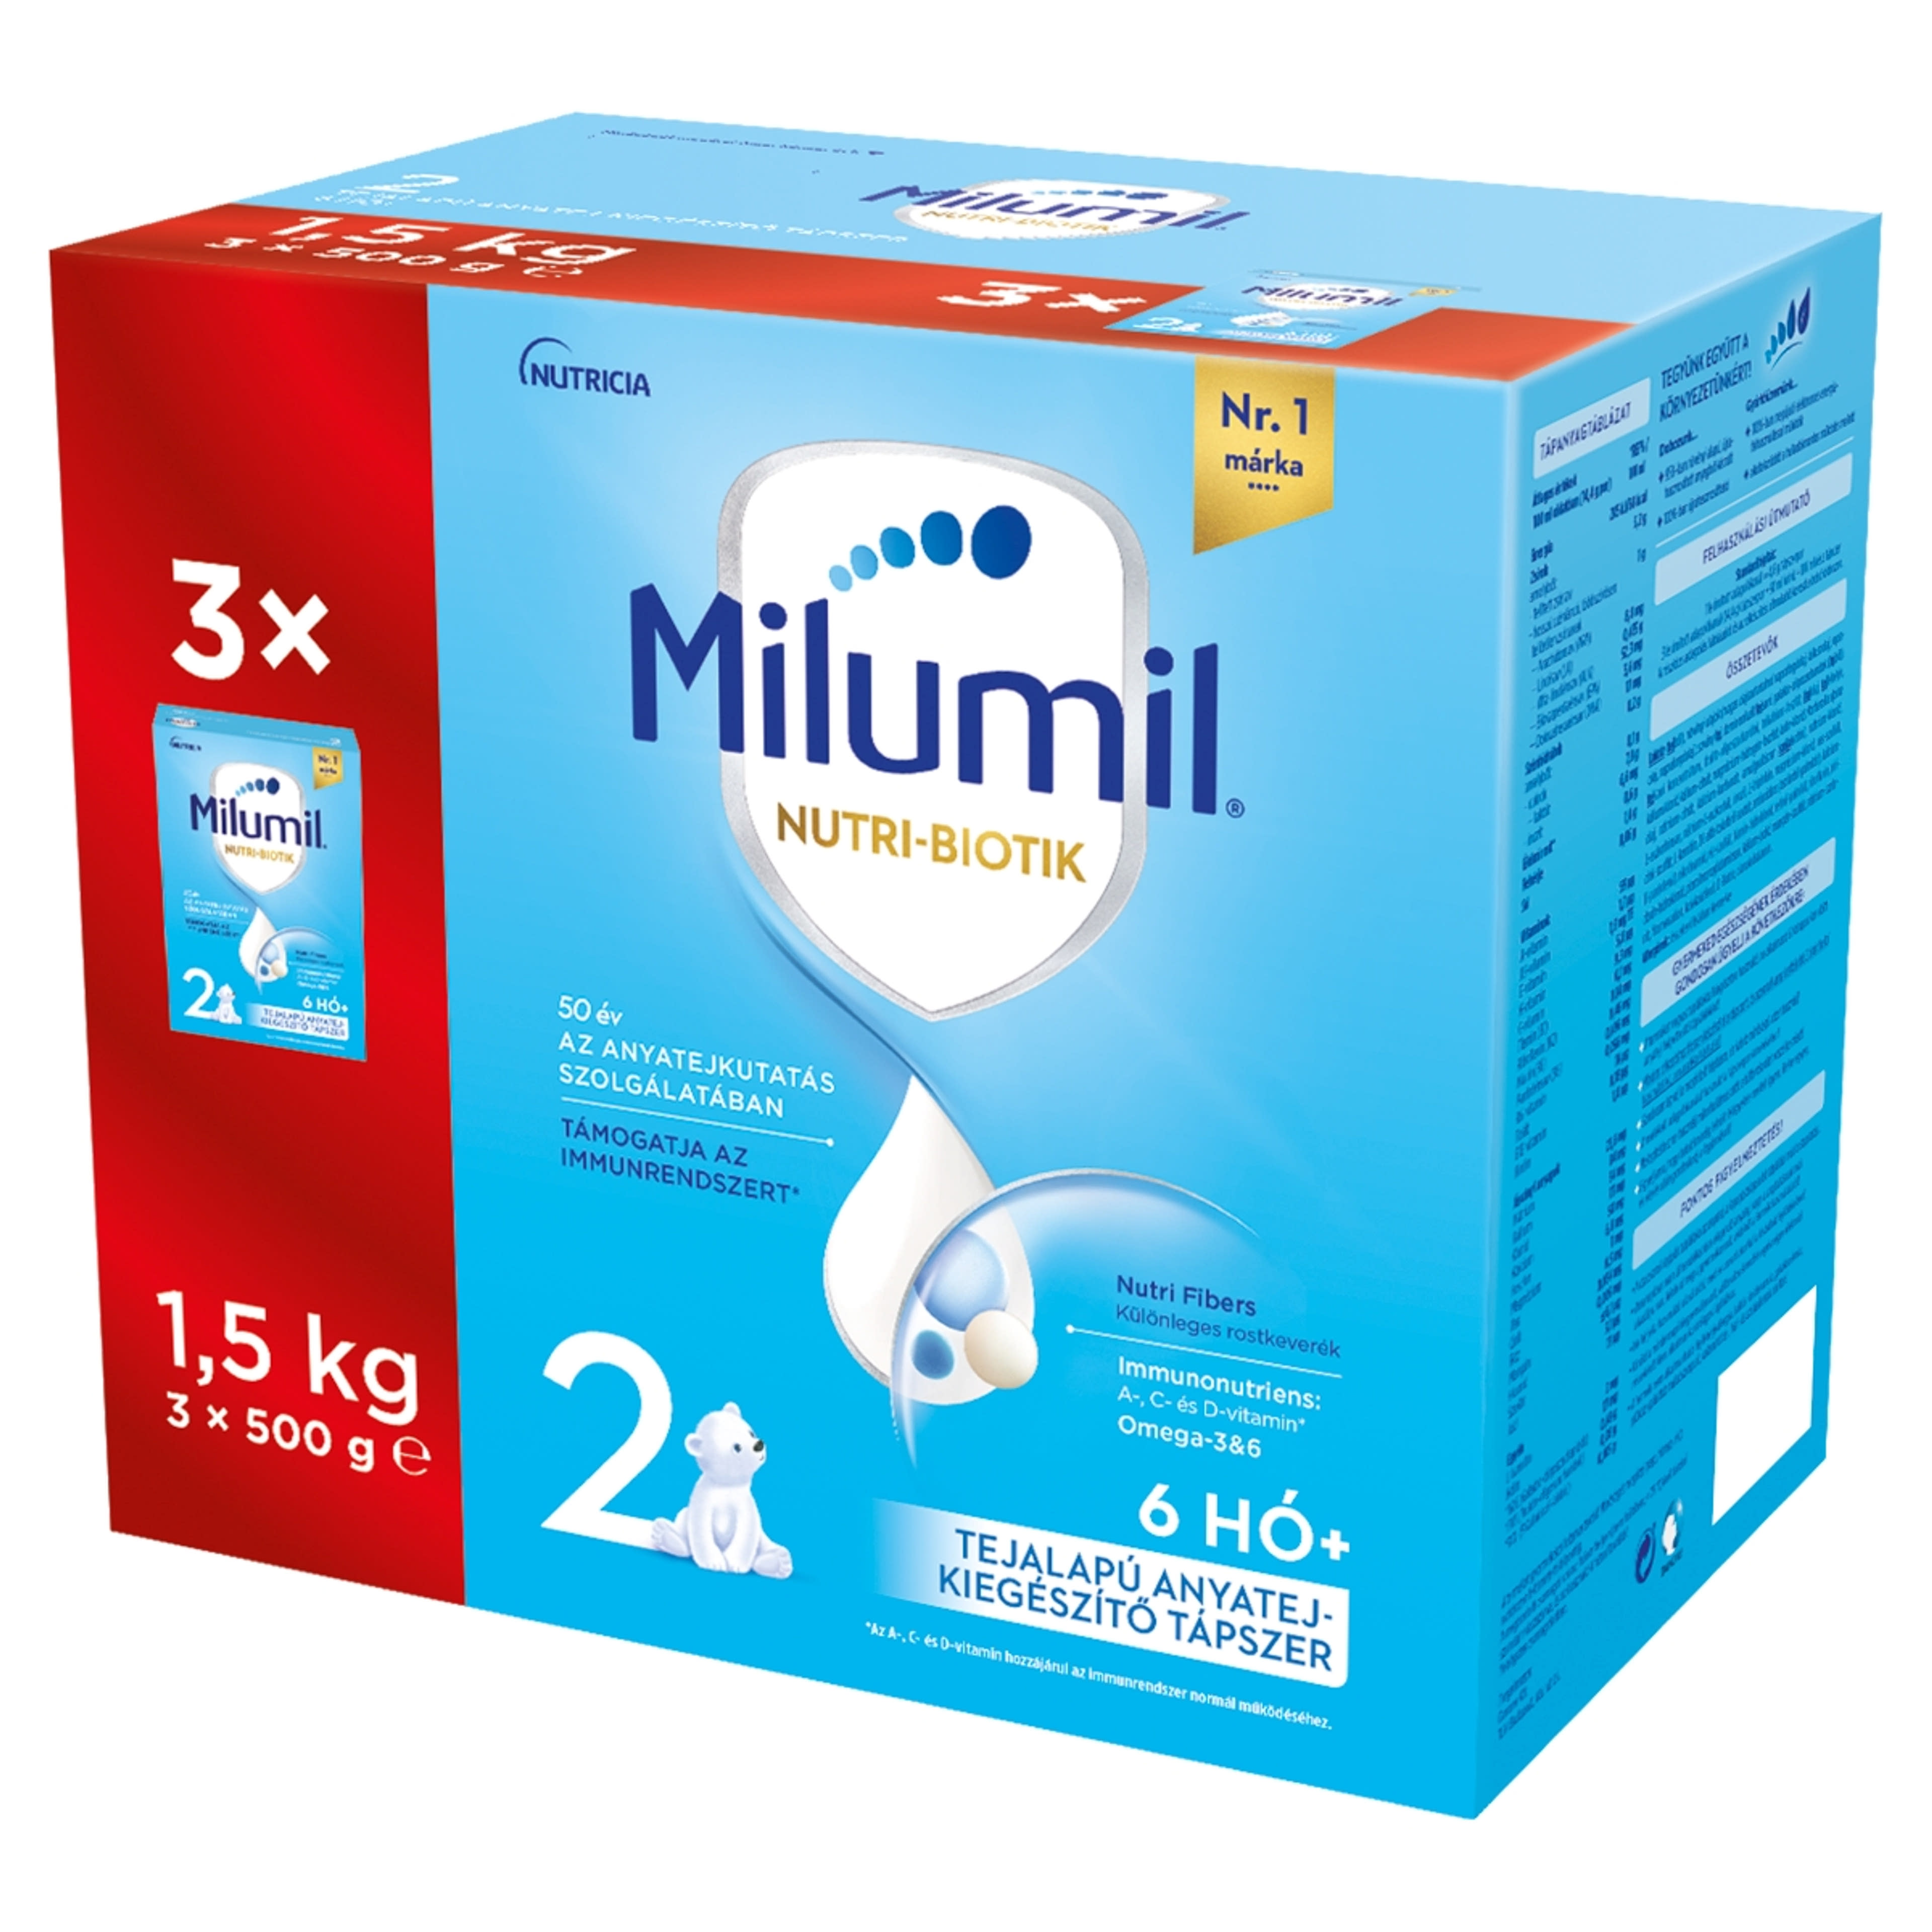 Milumil 2 tejalapú anyatej-kiegészítő tápszer 6-12 hónapos korig - 1500 g-2